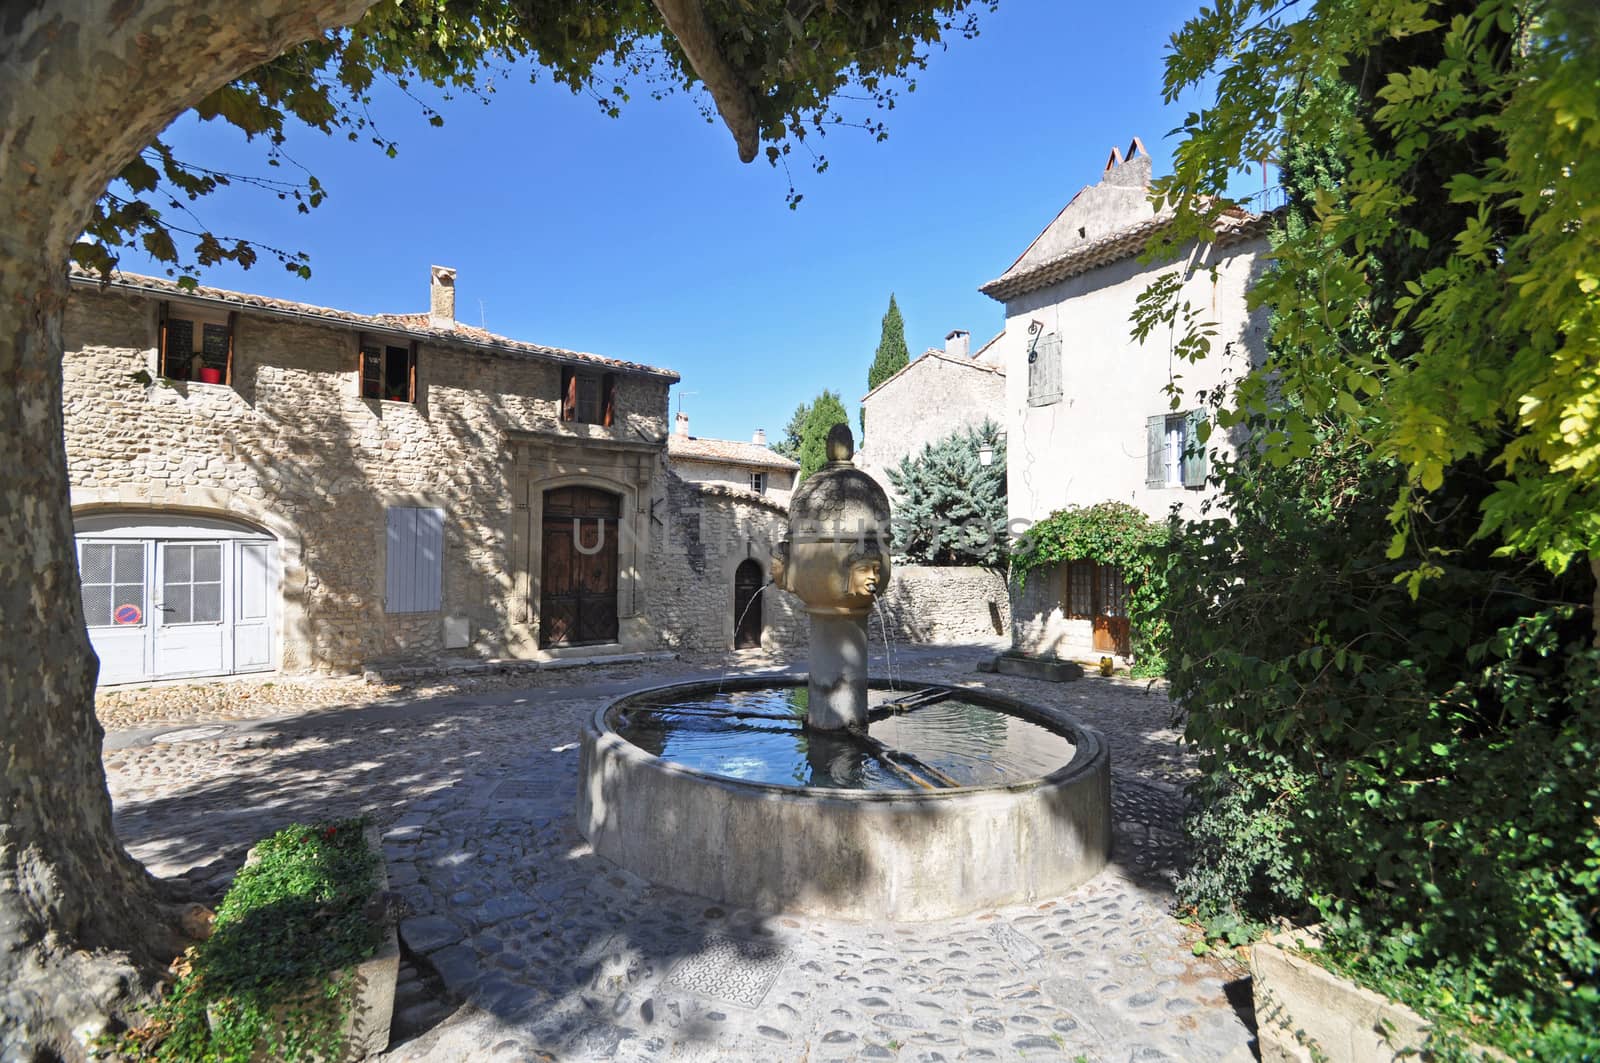 Fountain in Place de Vieux-Marche and Rue des Fours, ( Haute-Ville) at Vaison La Romain, in the Vancluse, Provence, France.